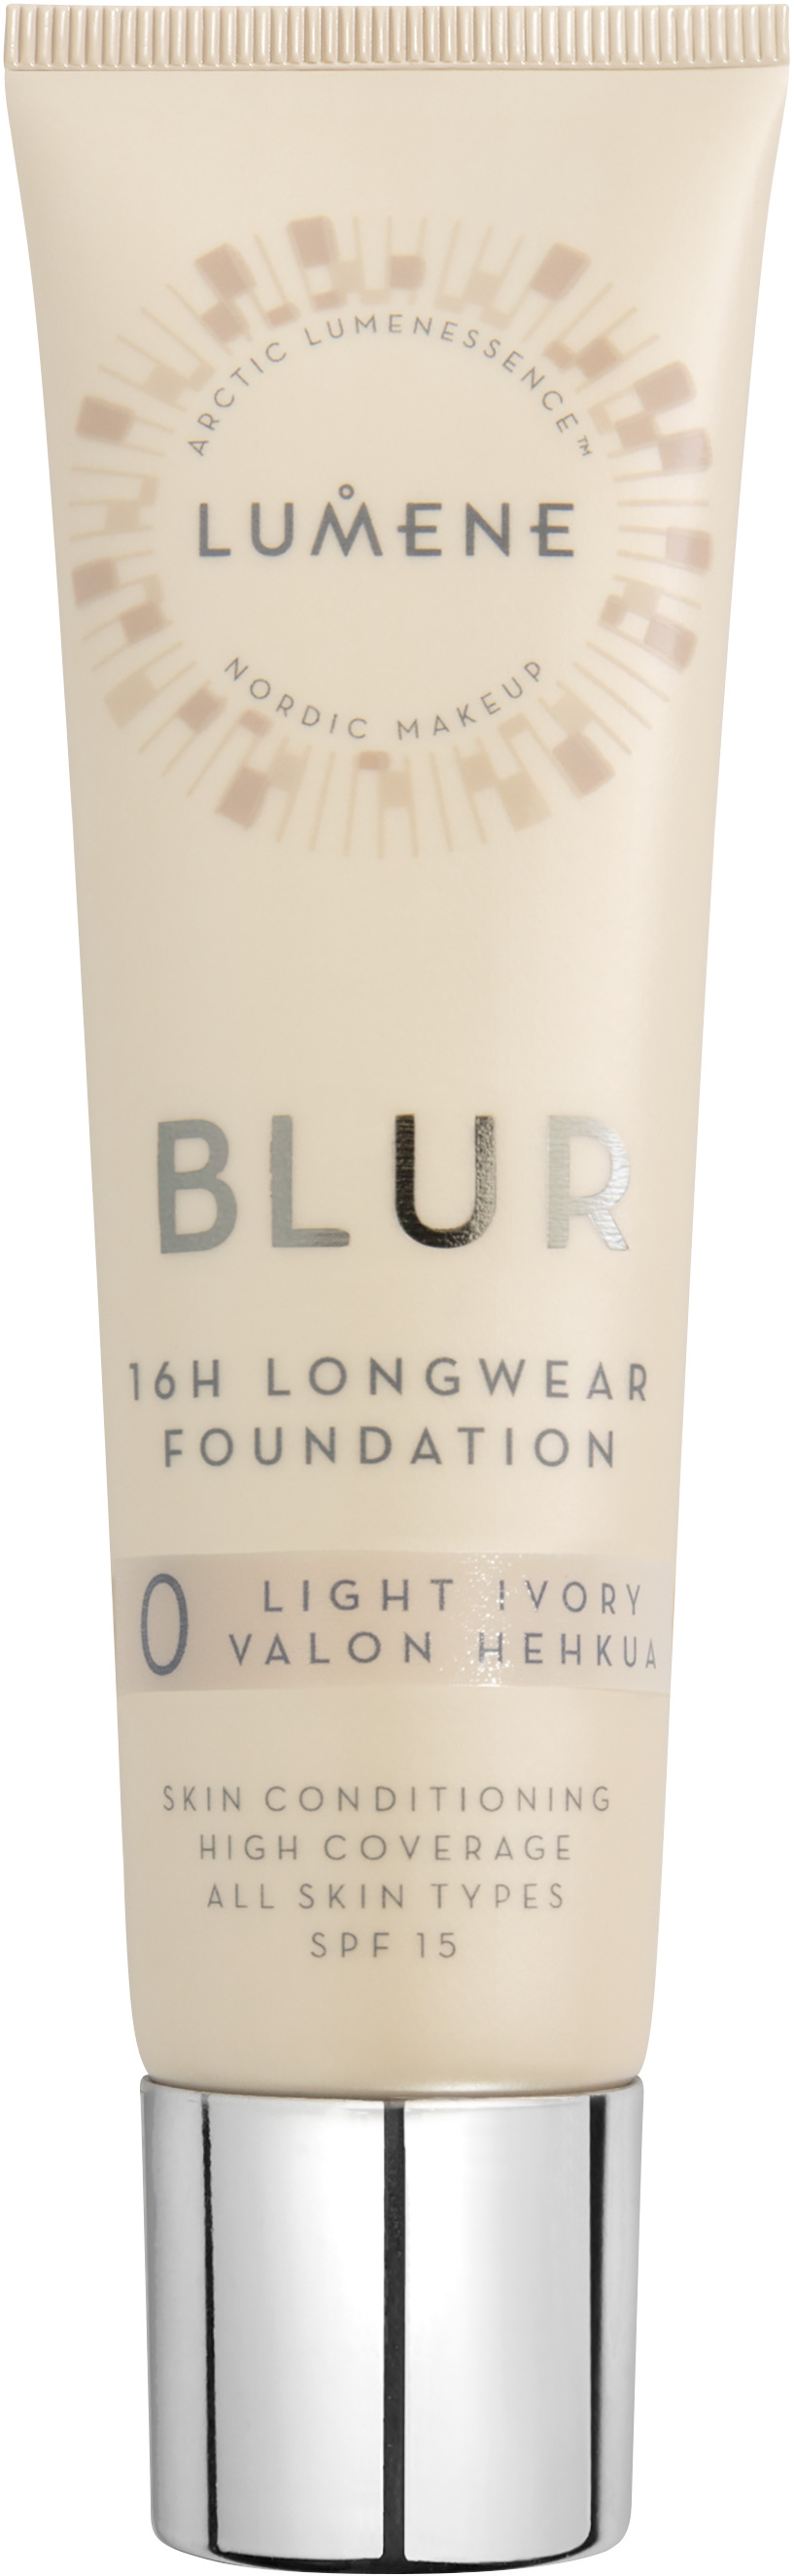 Lumene Blur 16h Longwear Foundation 0 30 ml